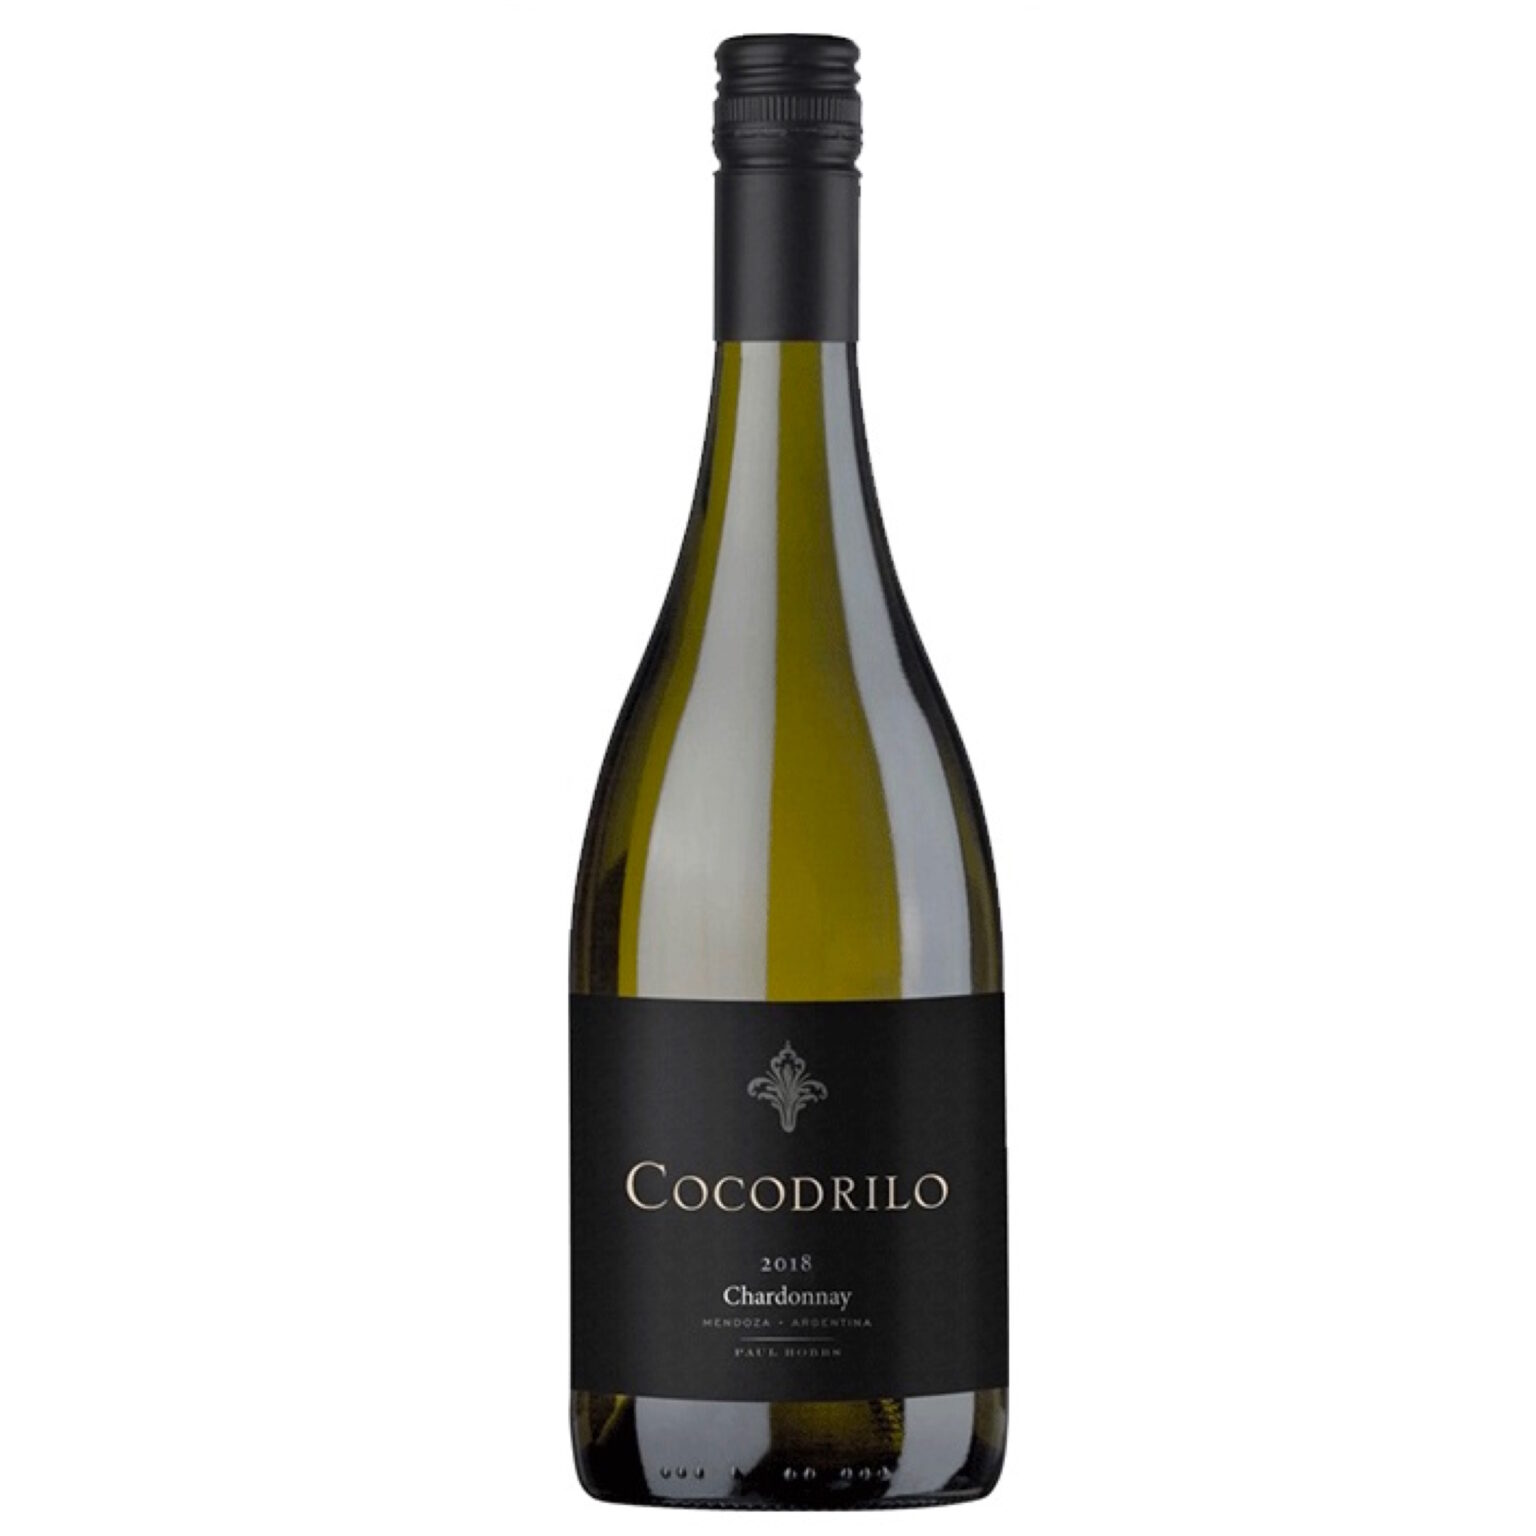 Cocodrilo Chardonnay Wijn van ons